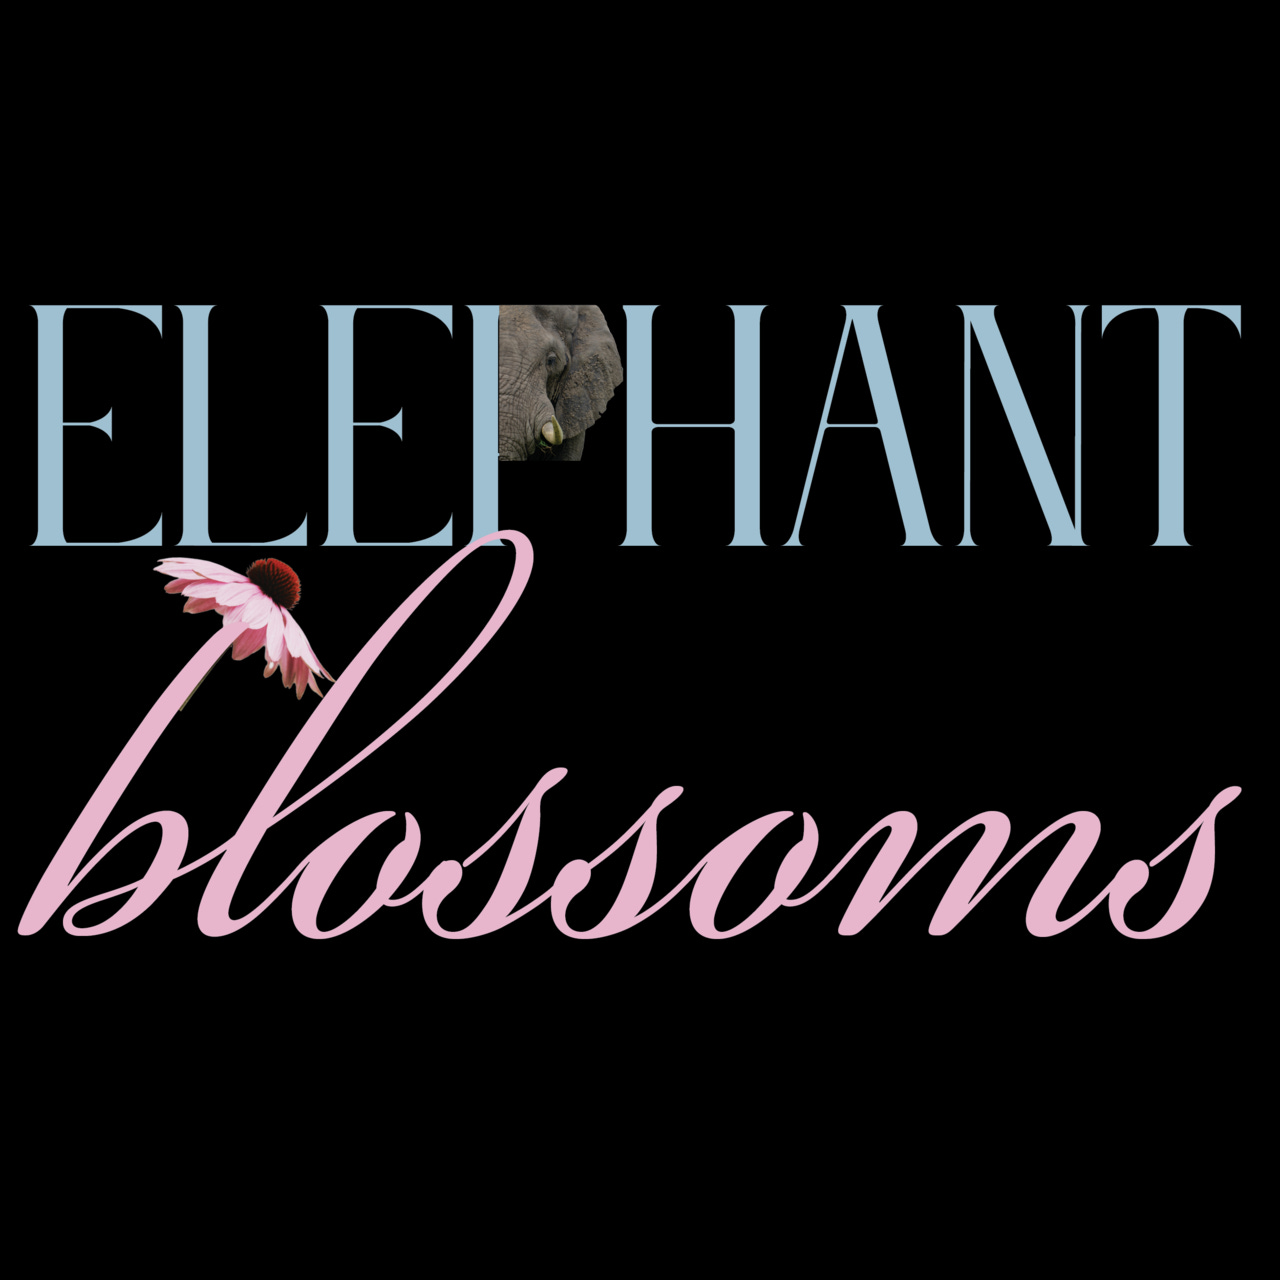 Artwork for Elephant Blossoms